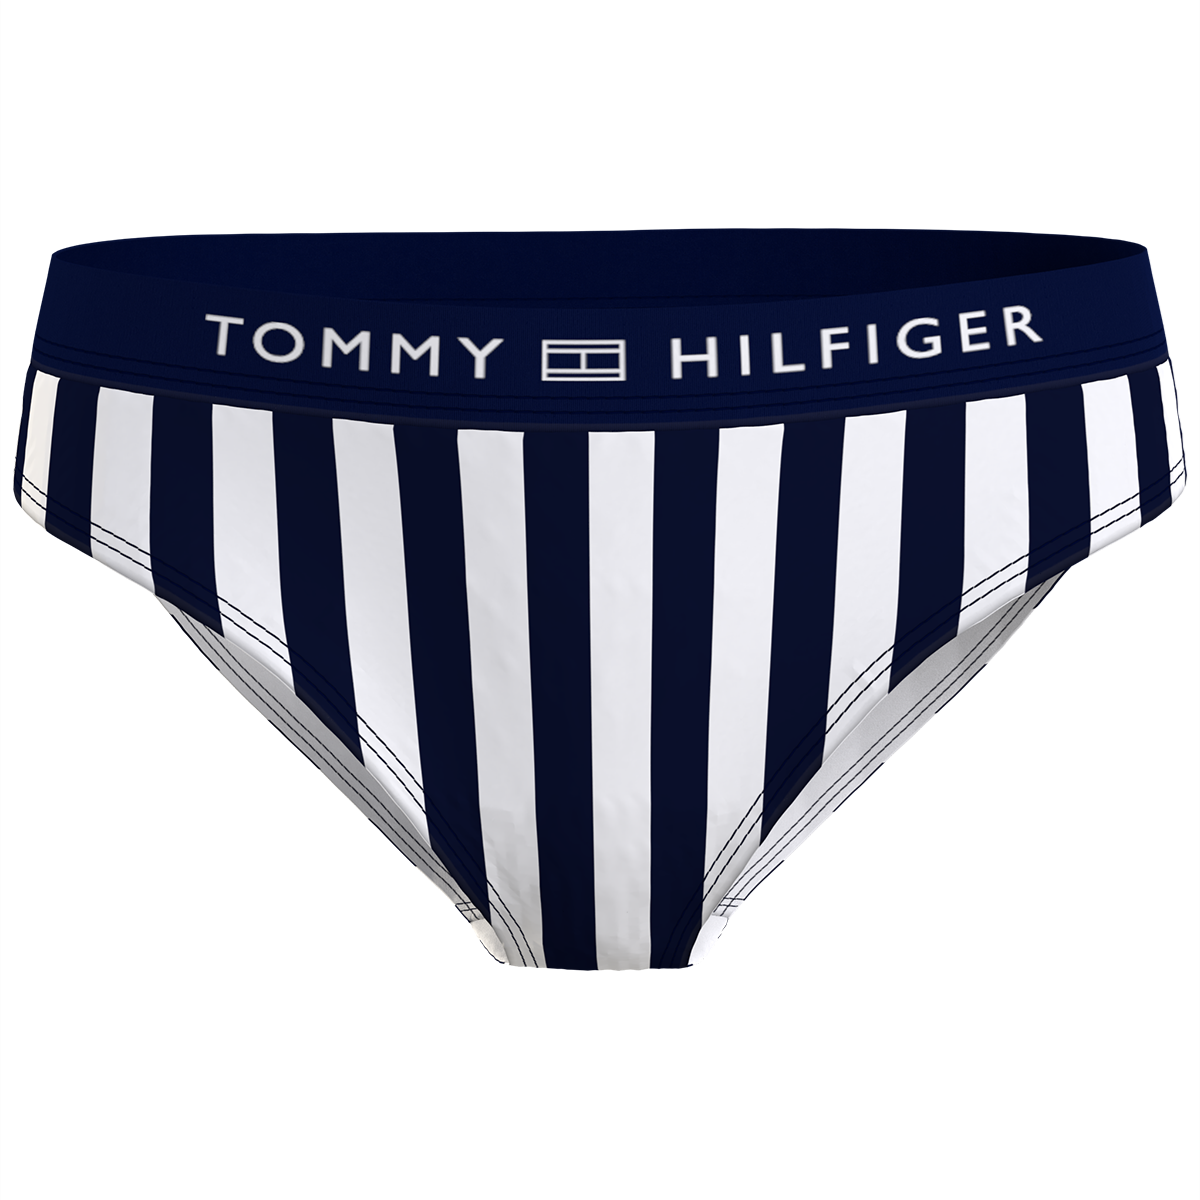 Tommy Hilfiger Lingeri Bikini Hose, Farbe: Schwarz/weiß, Größe: XS, Damen von Tommy hilfiger